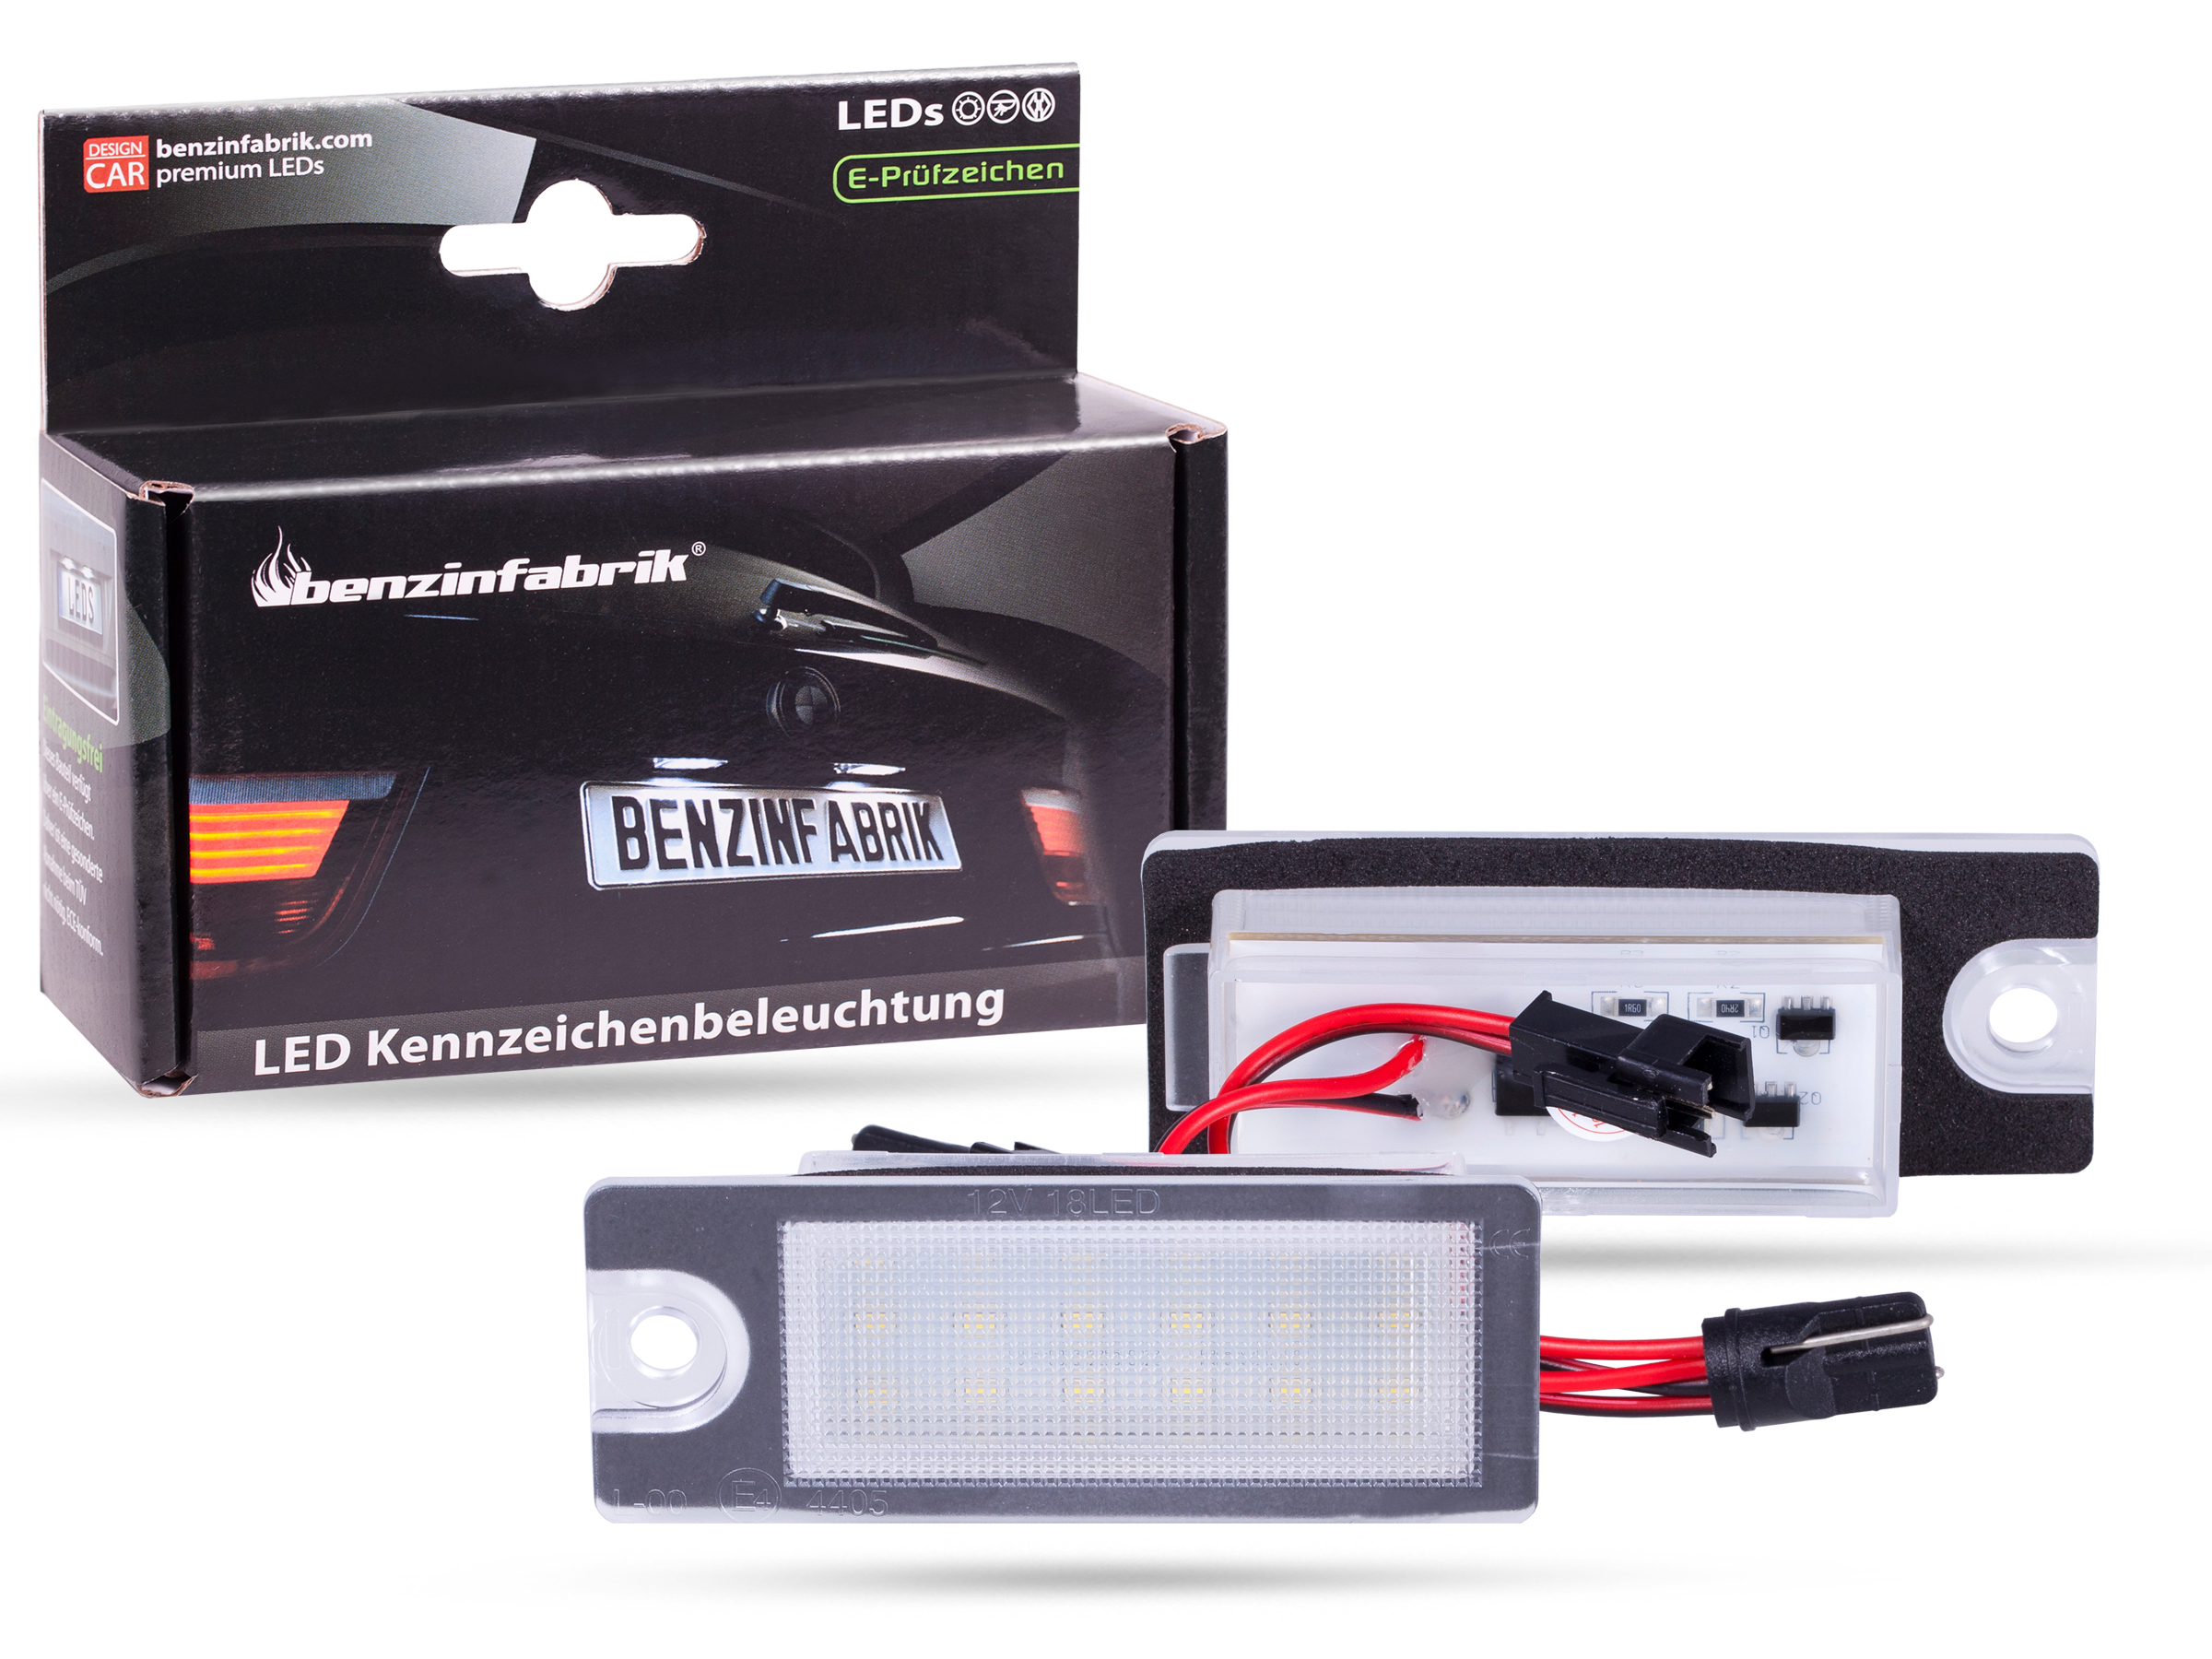 LED Kennzeichenbeleuchtung Module Volvo S80 Bj.: 98-06, mit E